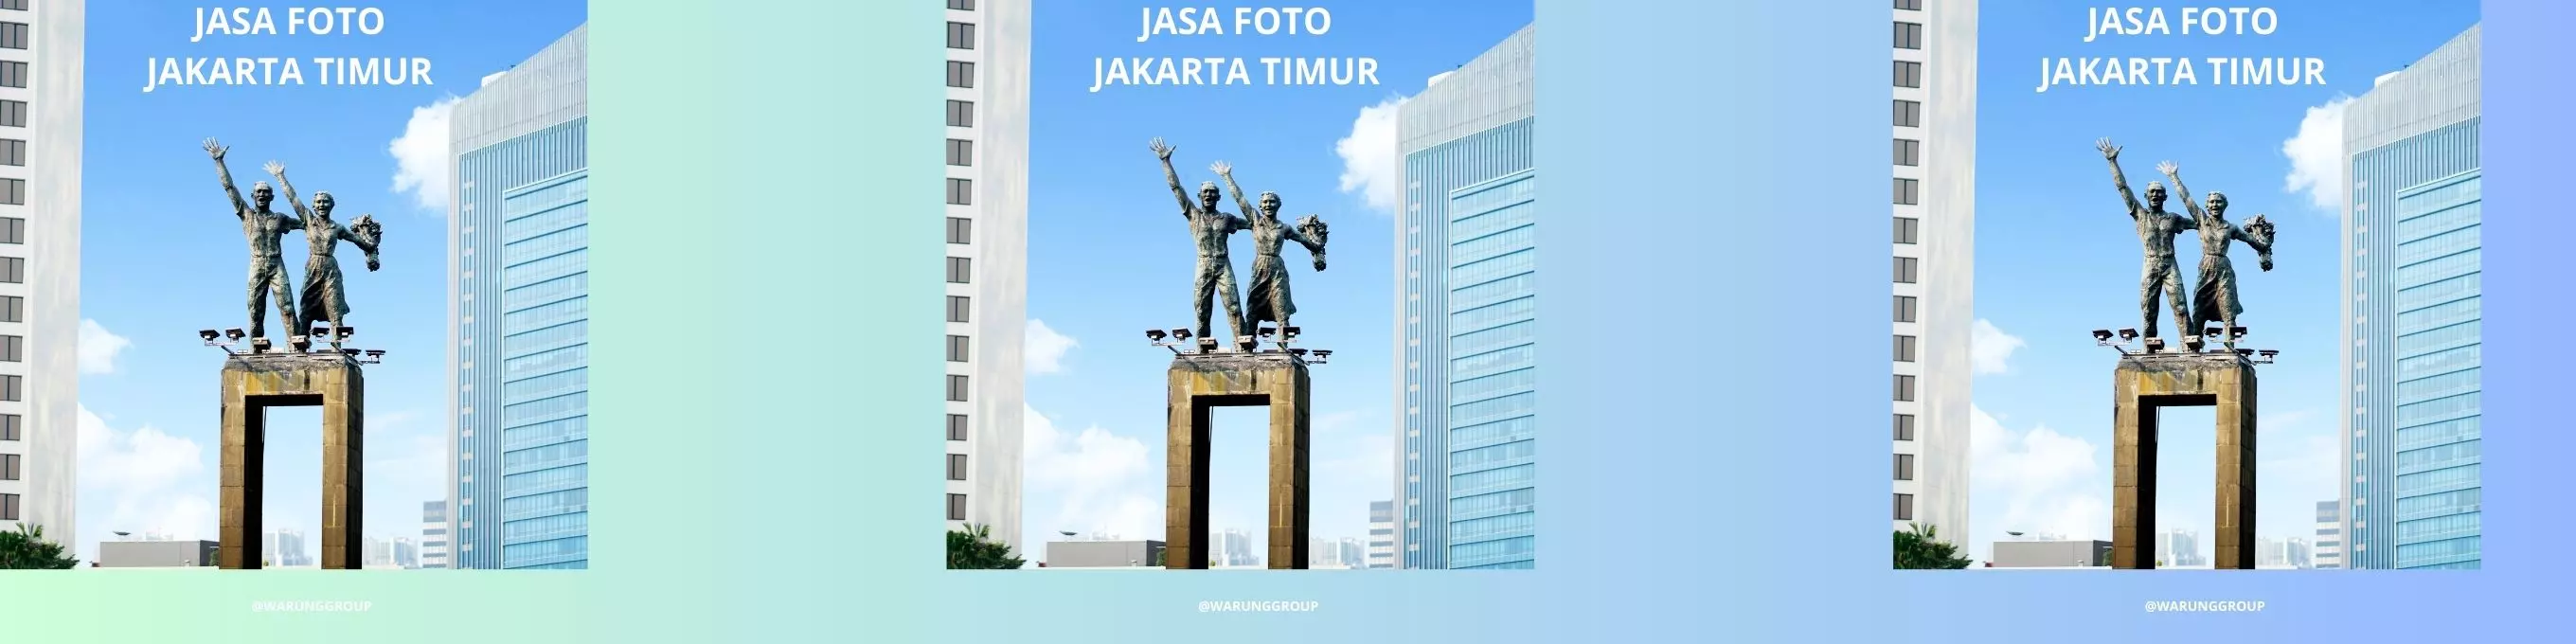 Jasa Foto Jakarta Timur